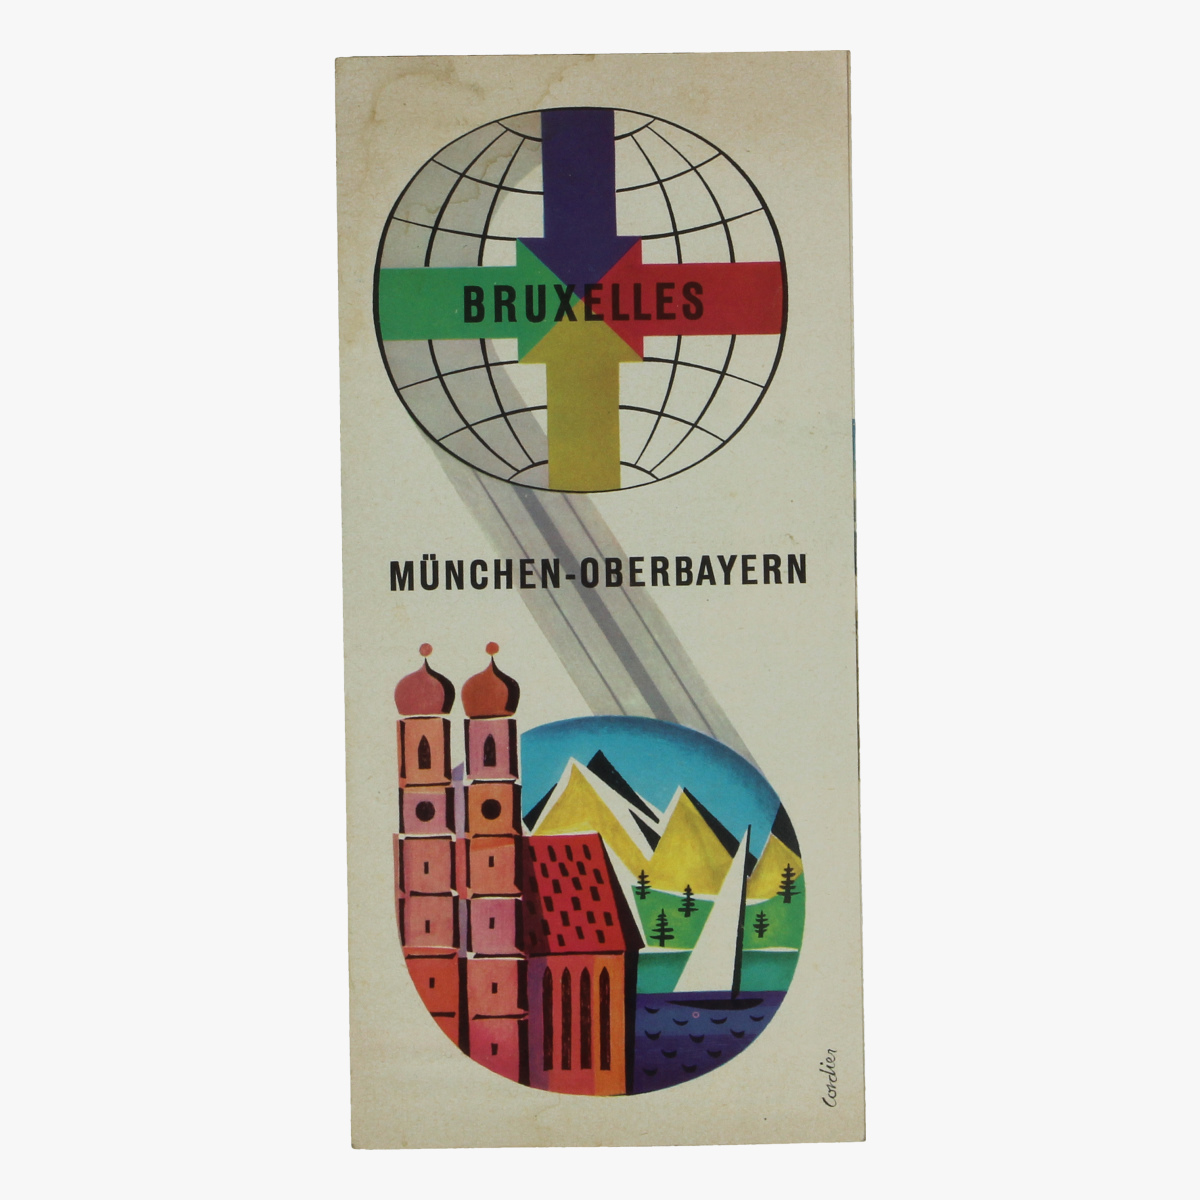 Afbeeldingen van expo 58 folder bruxelles münchen-oberbayern